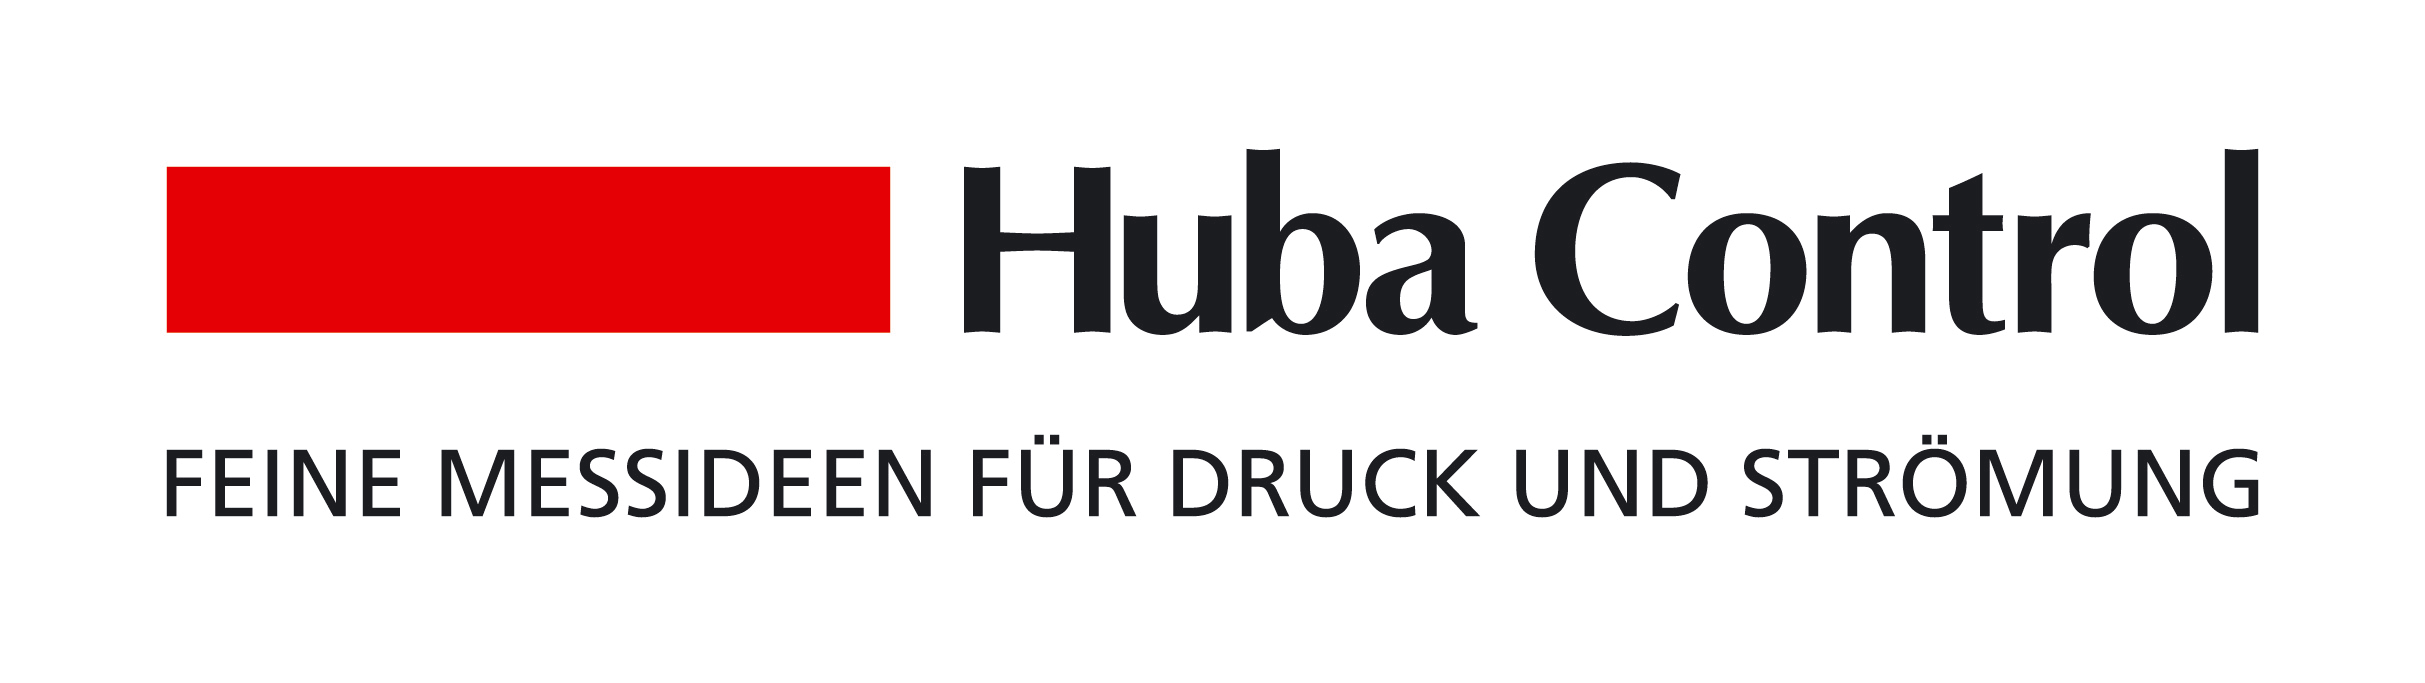 Logo Huba Control AG Trägerschaftsmitglied der ABB Technikerschule